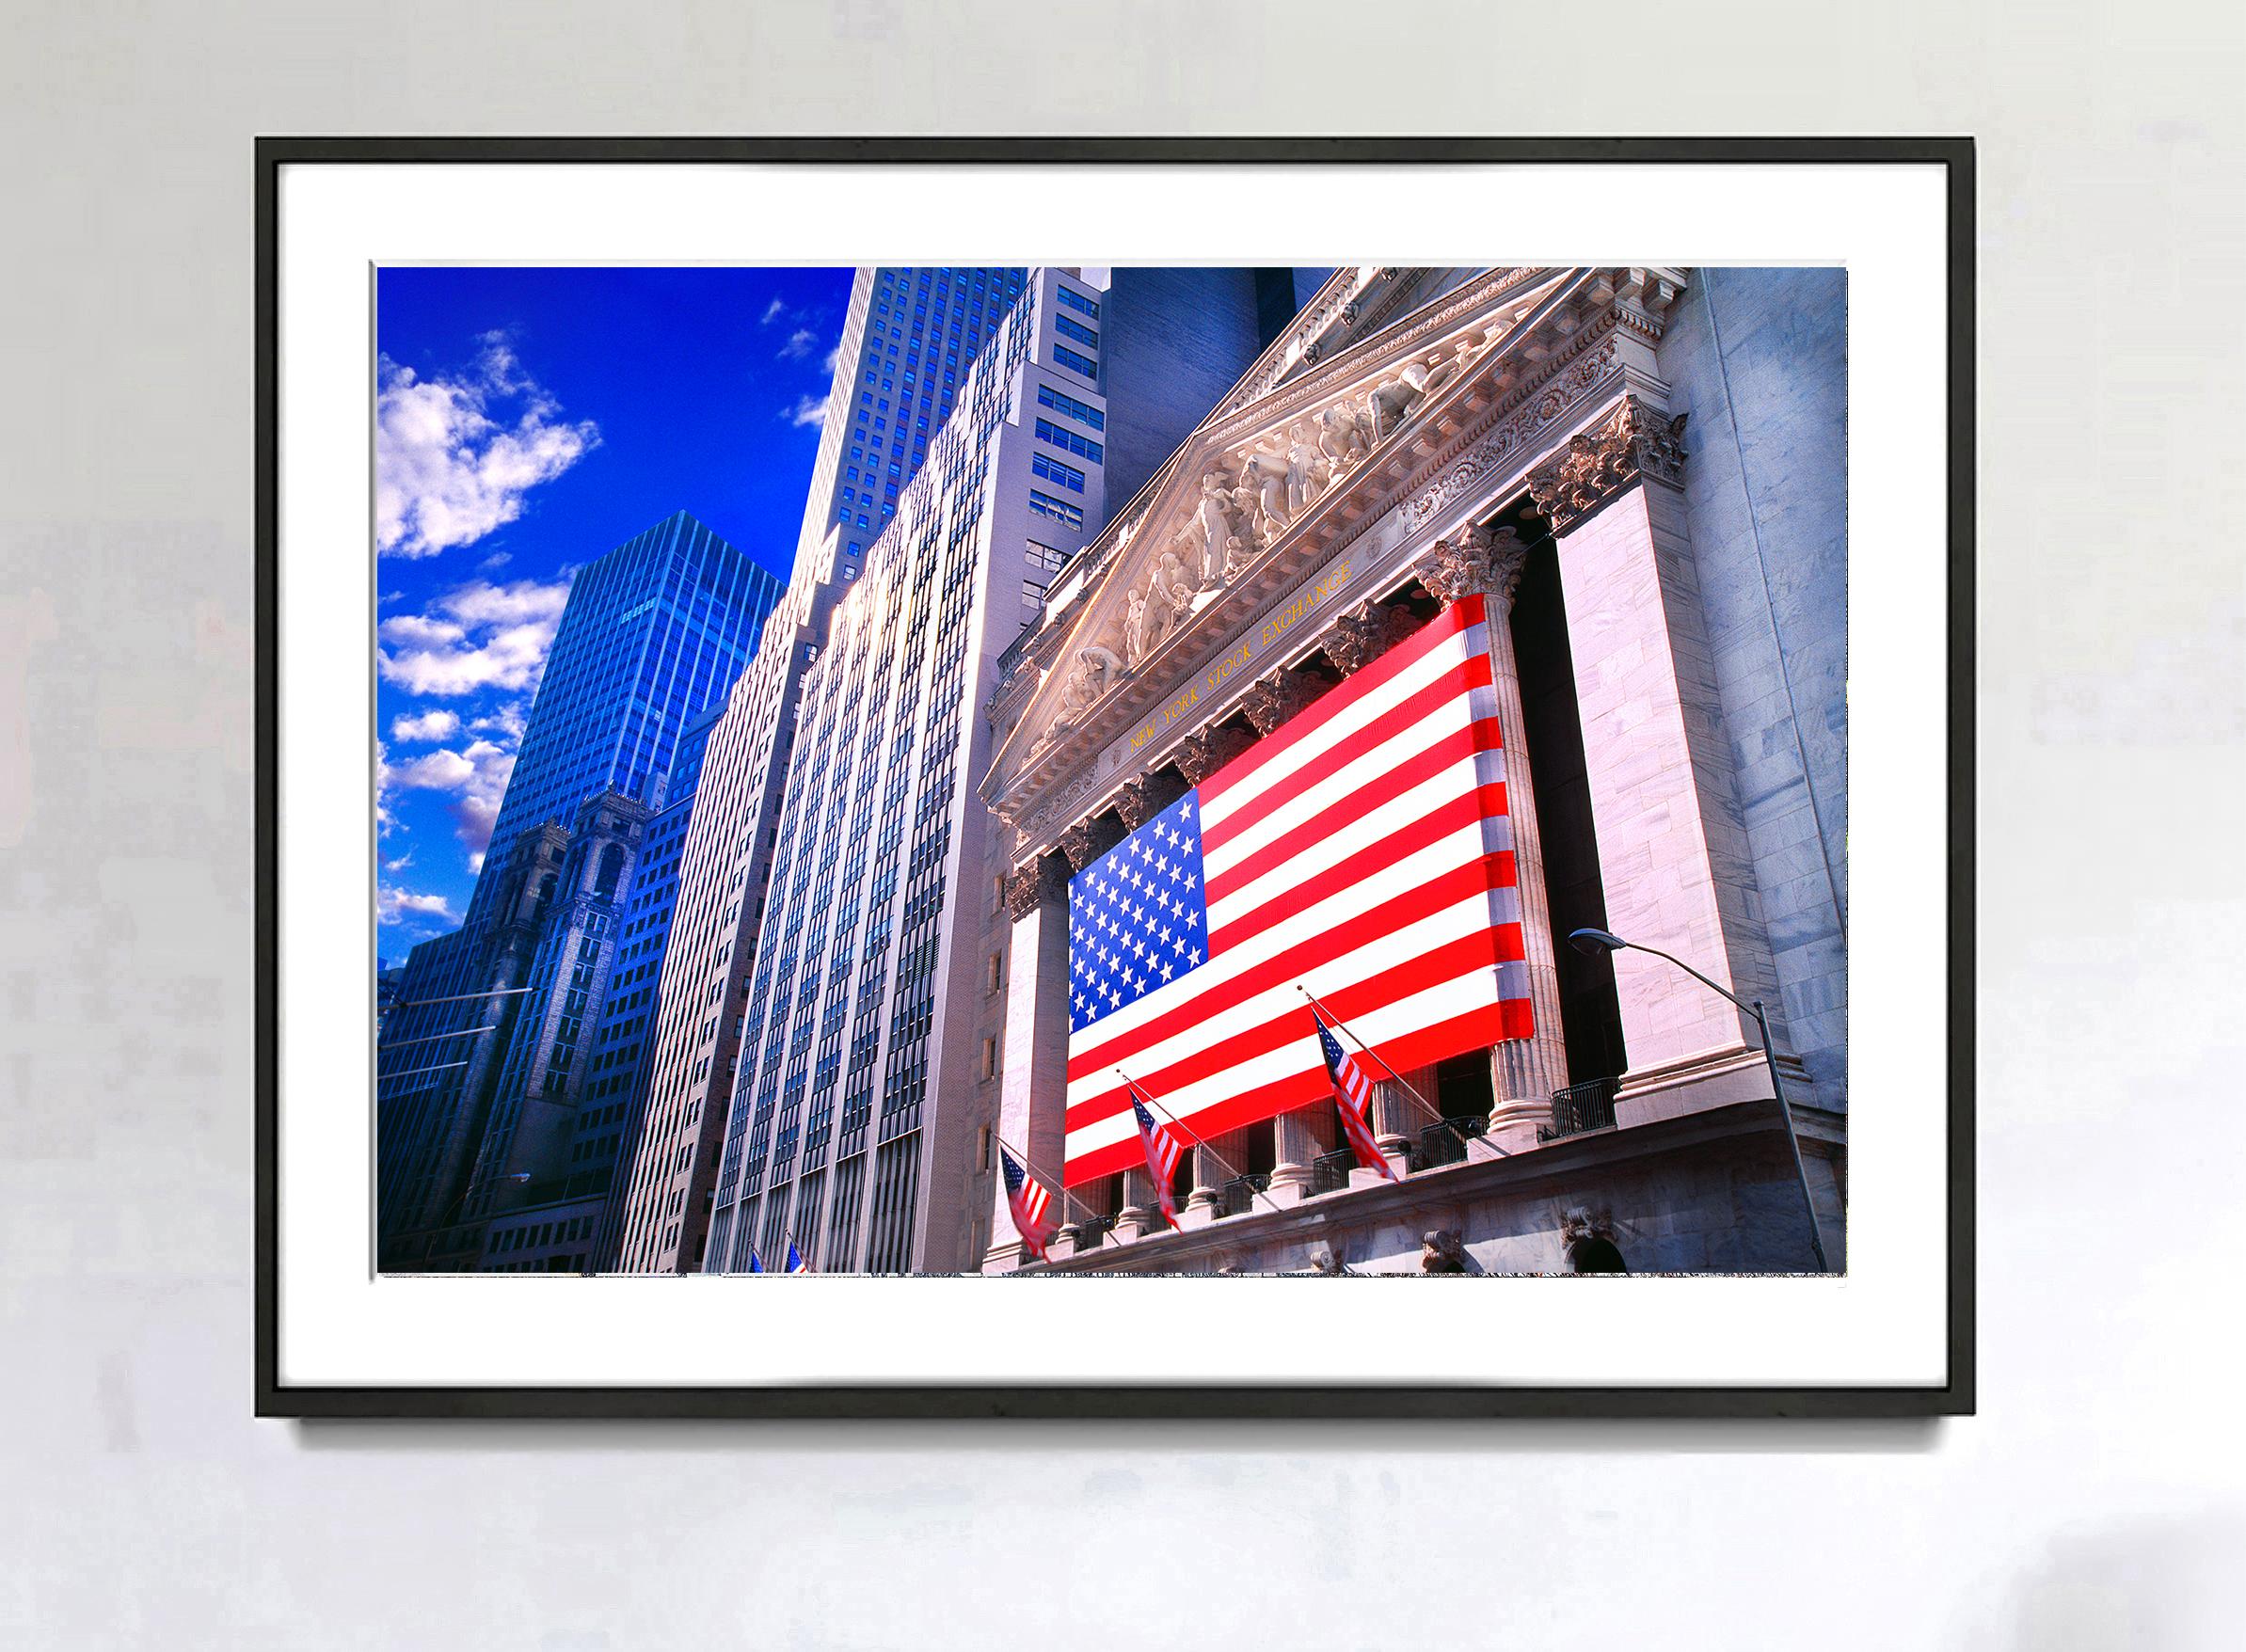 Exchange of New York avec le drapeau américain  - Le capitalisme américain - Photograph de Mitchell Funk